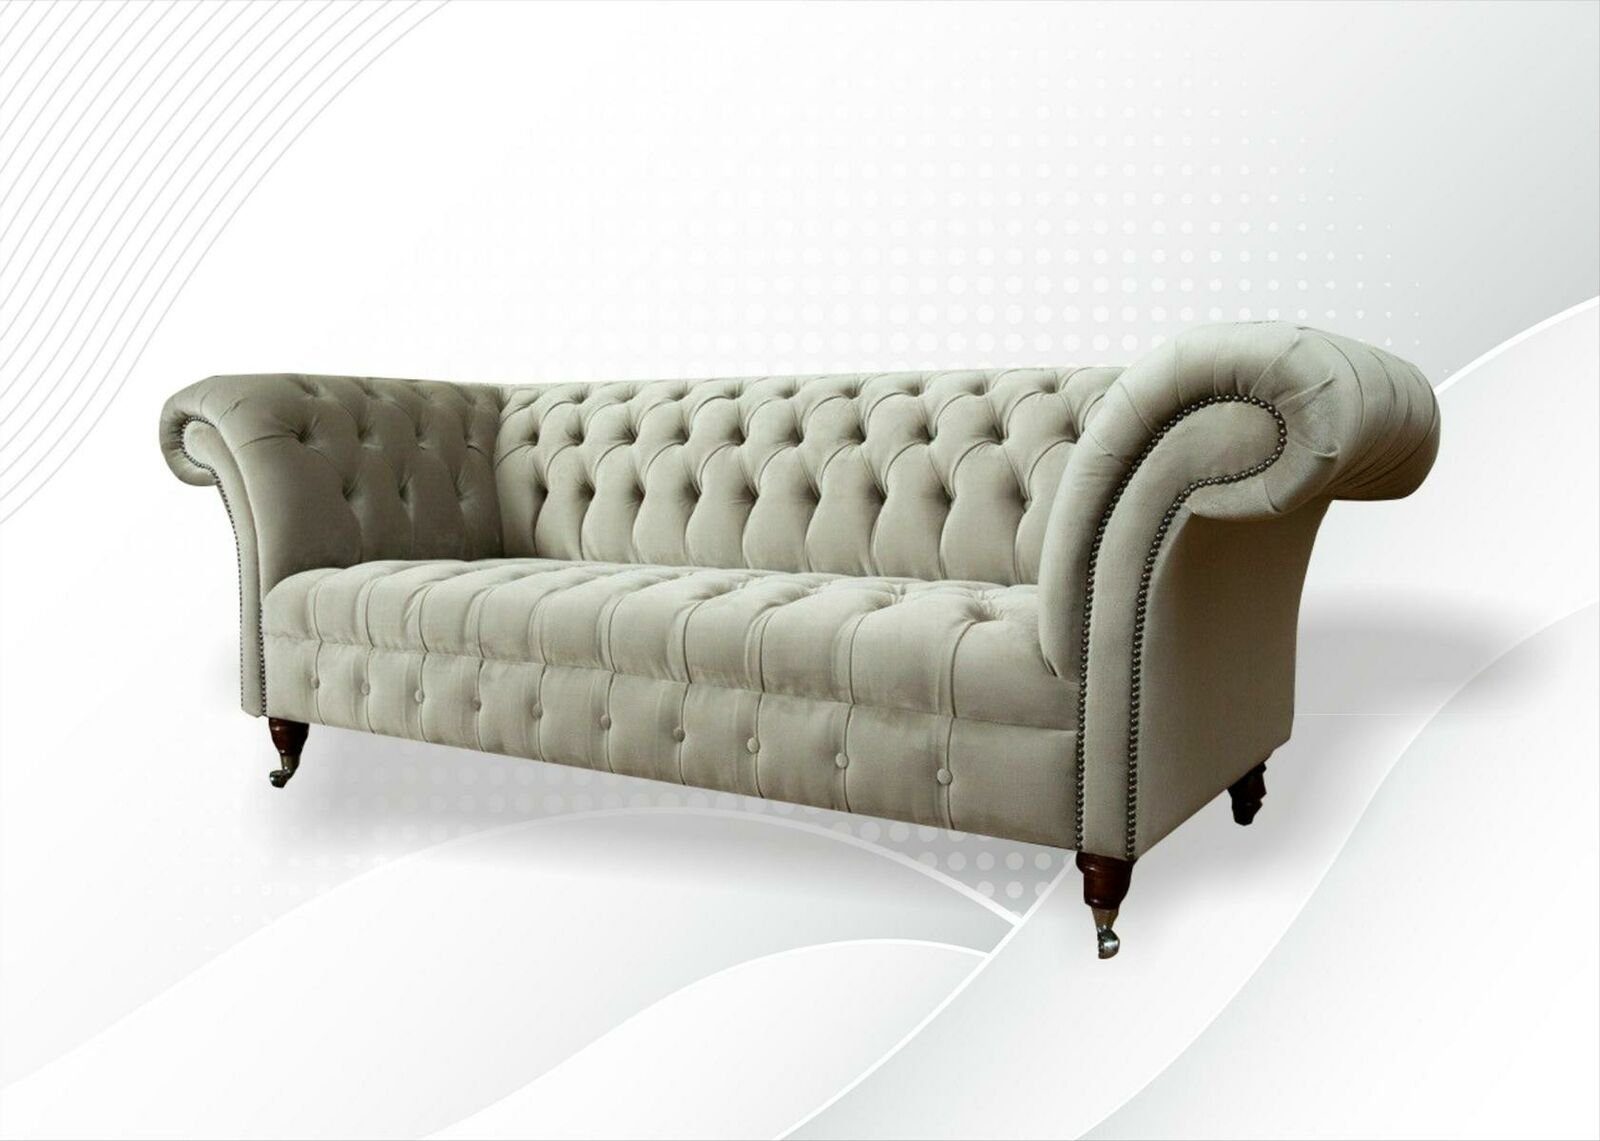 JVmoebel Chesterfield-Sofa Taupe Chesterfield 3-Sitzer Wohnzimmermöbel Modern Design Neu, Made in Europe